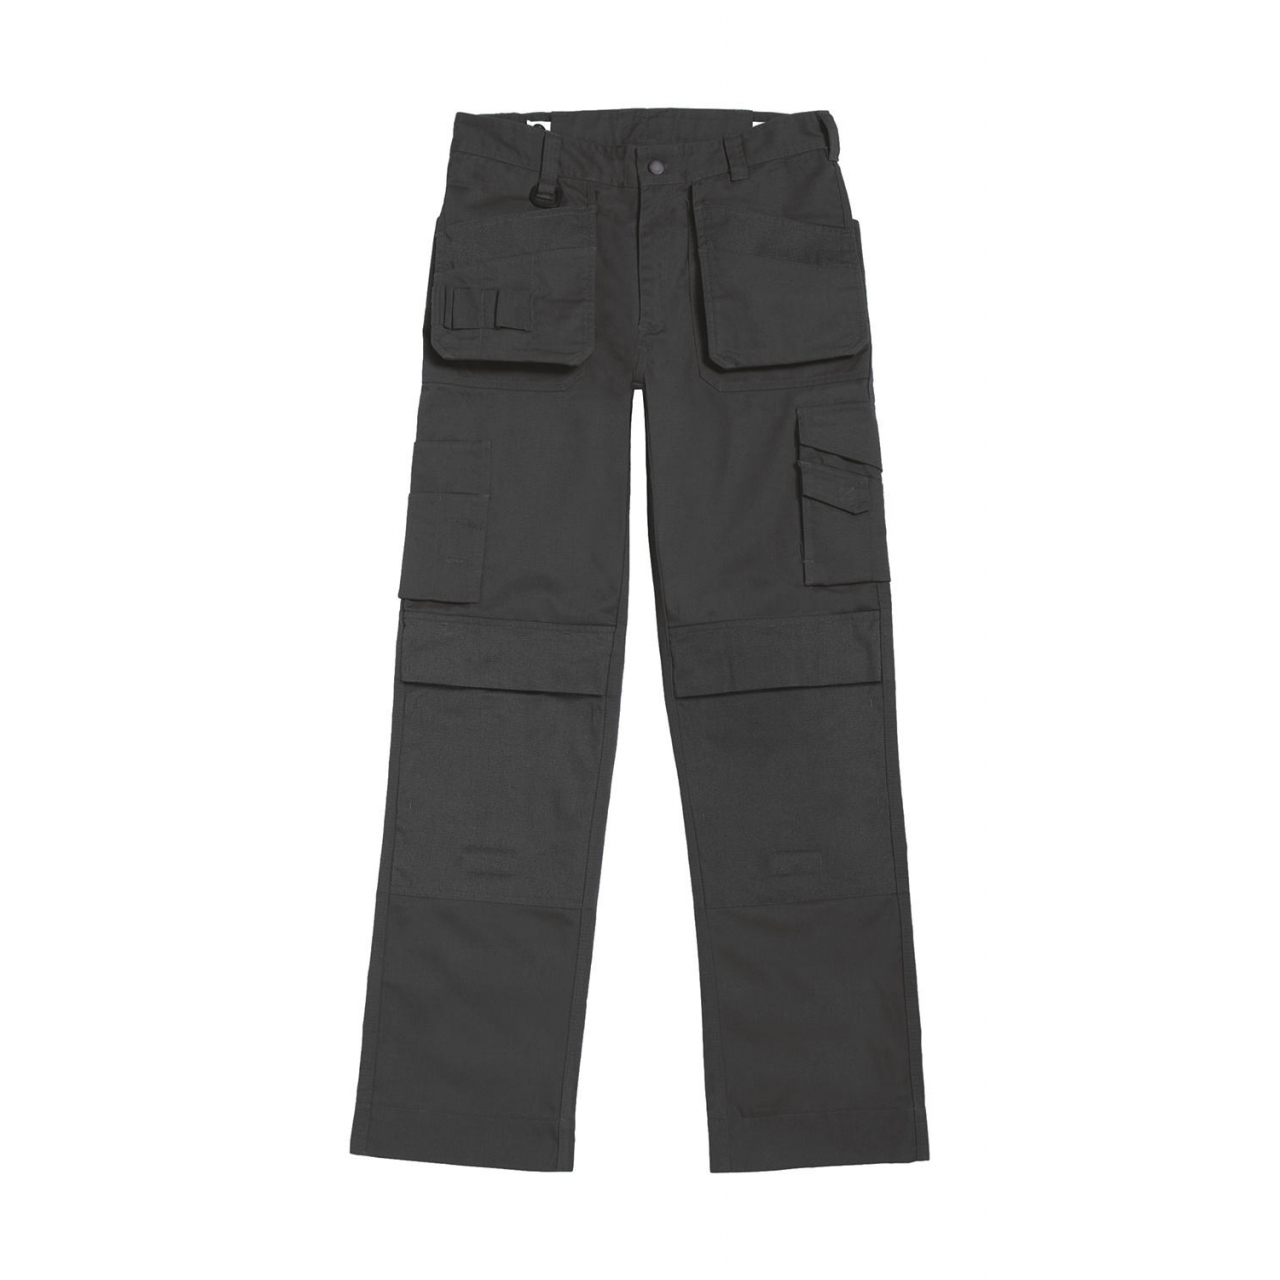 Kalhoty pracovní B&C Performance Pro - šedé, 28